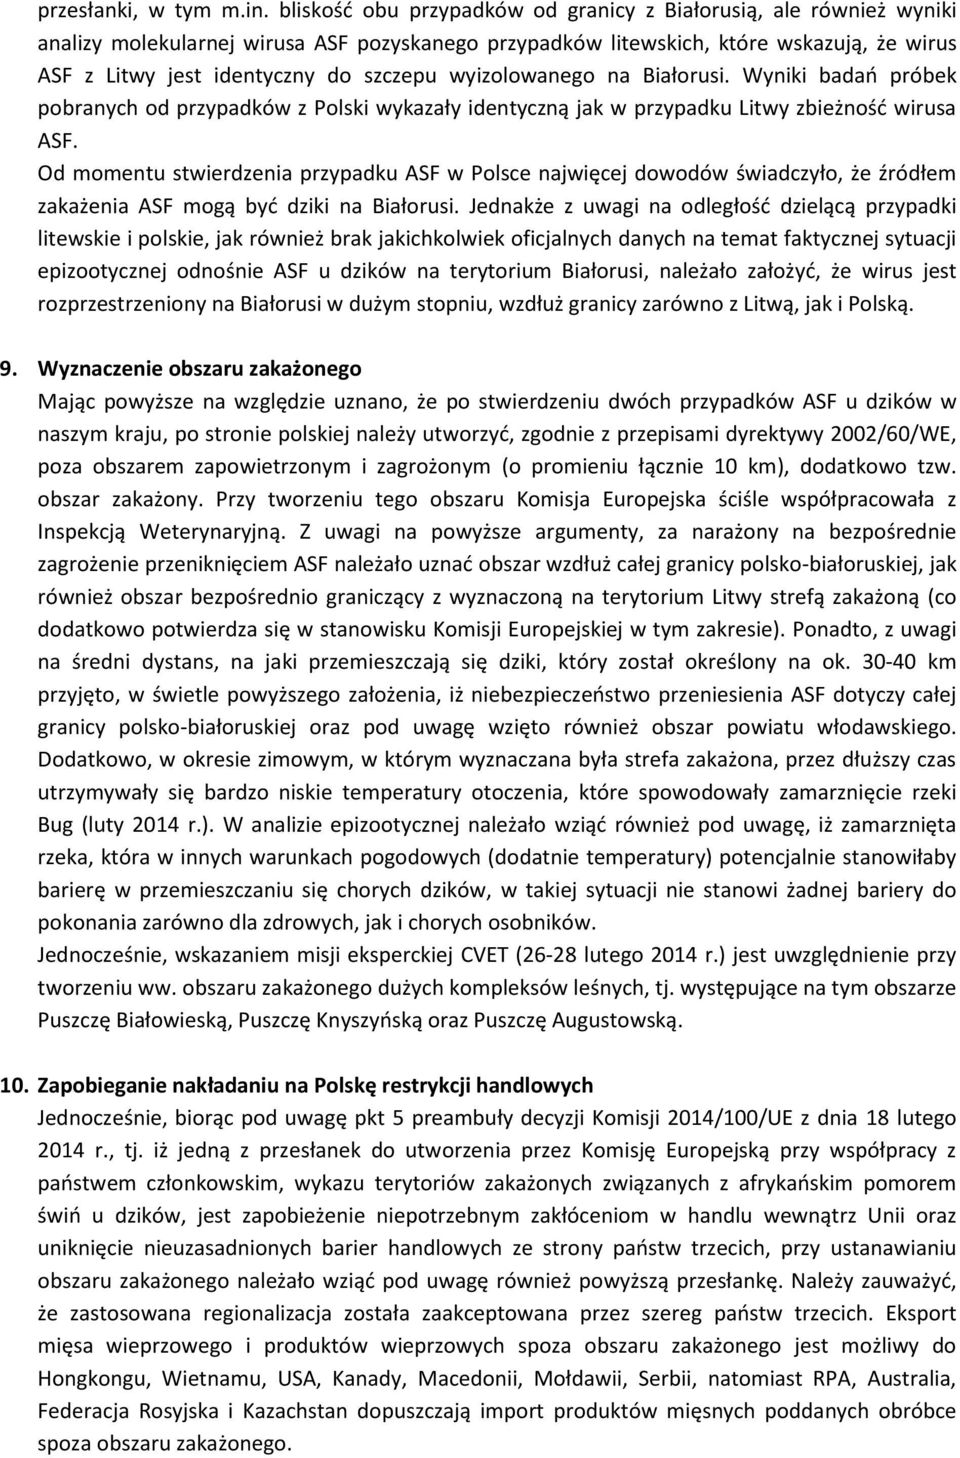 wyizolowanego na Białorusi. Wyniki badao próbek pobranych od przypadków z Polski wykazały identyczną jak w przypadku Litwy zbieżnośd wirusa ASF.